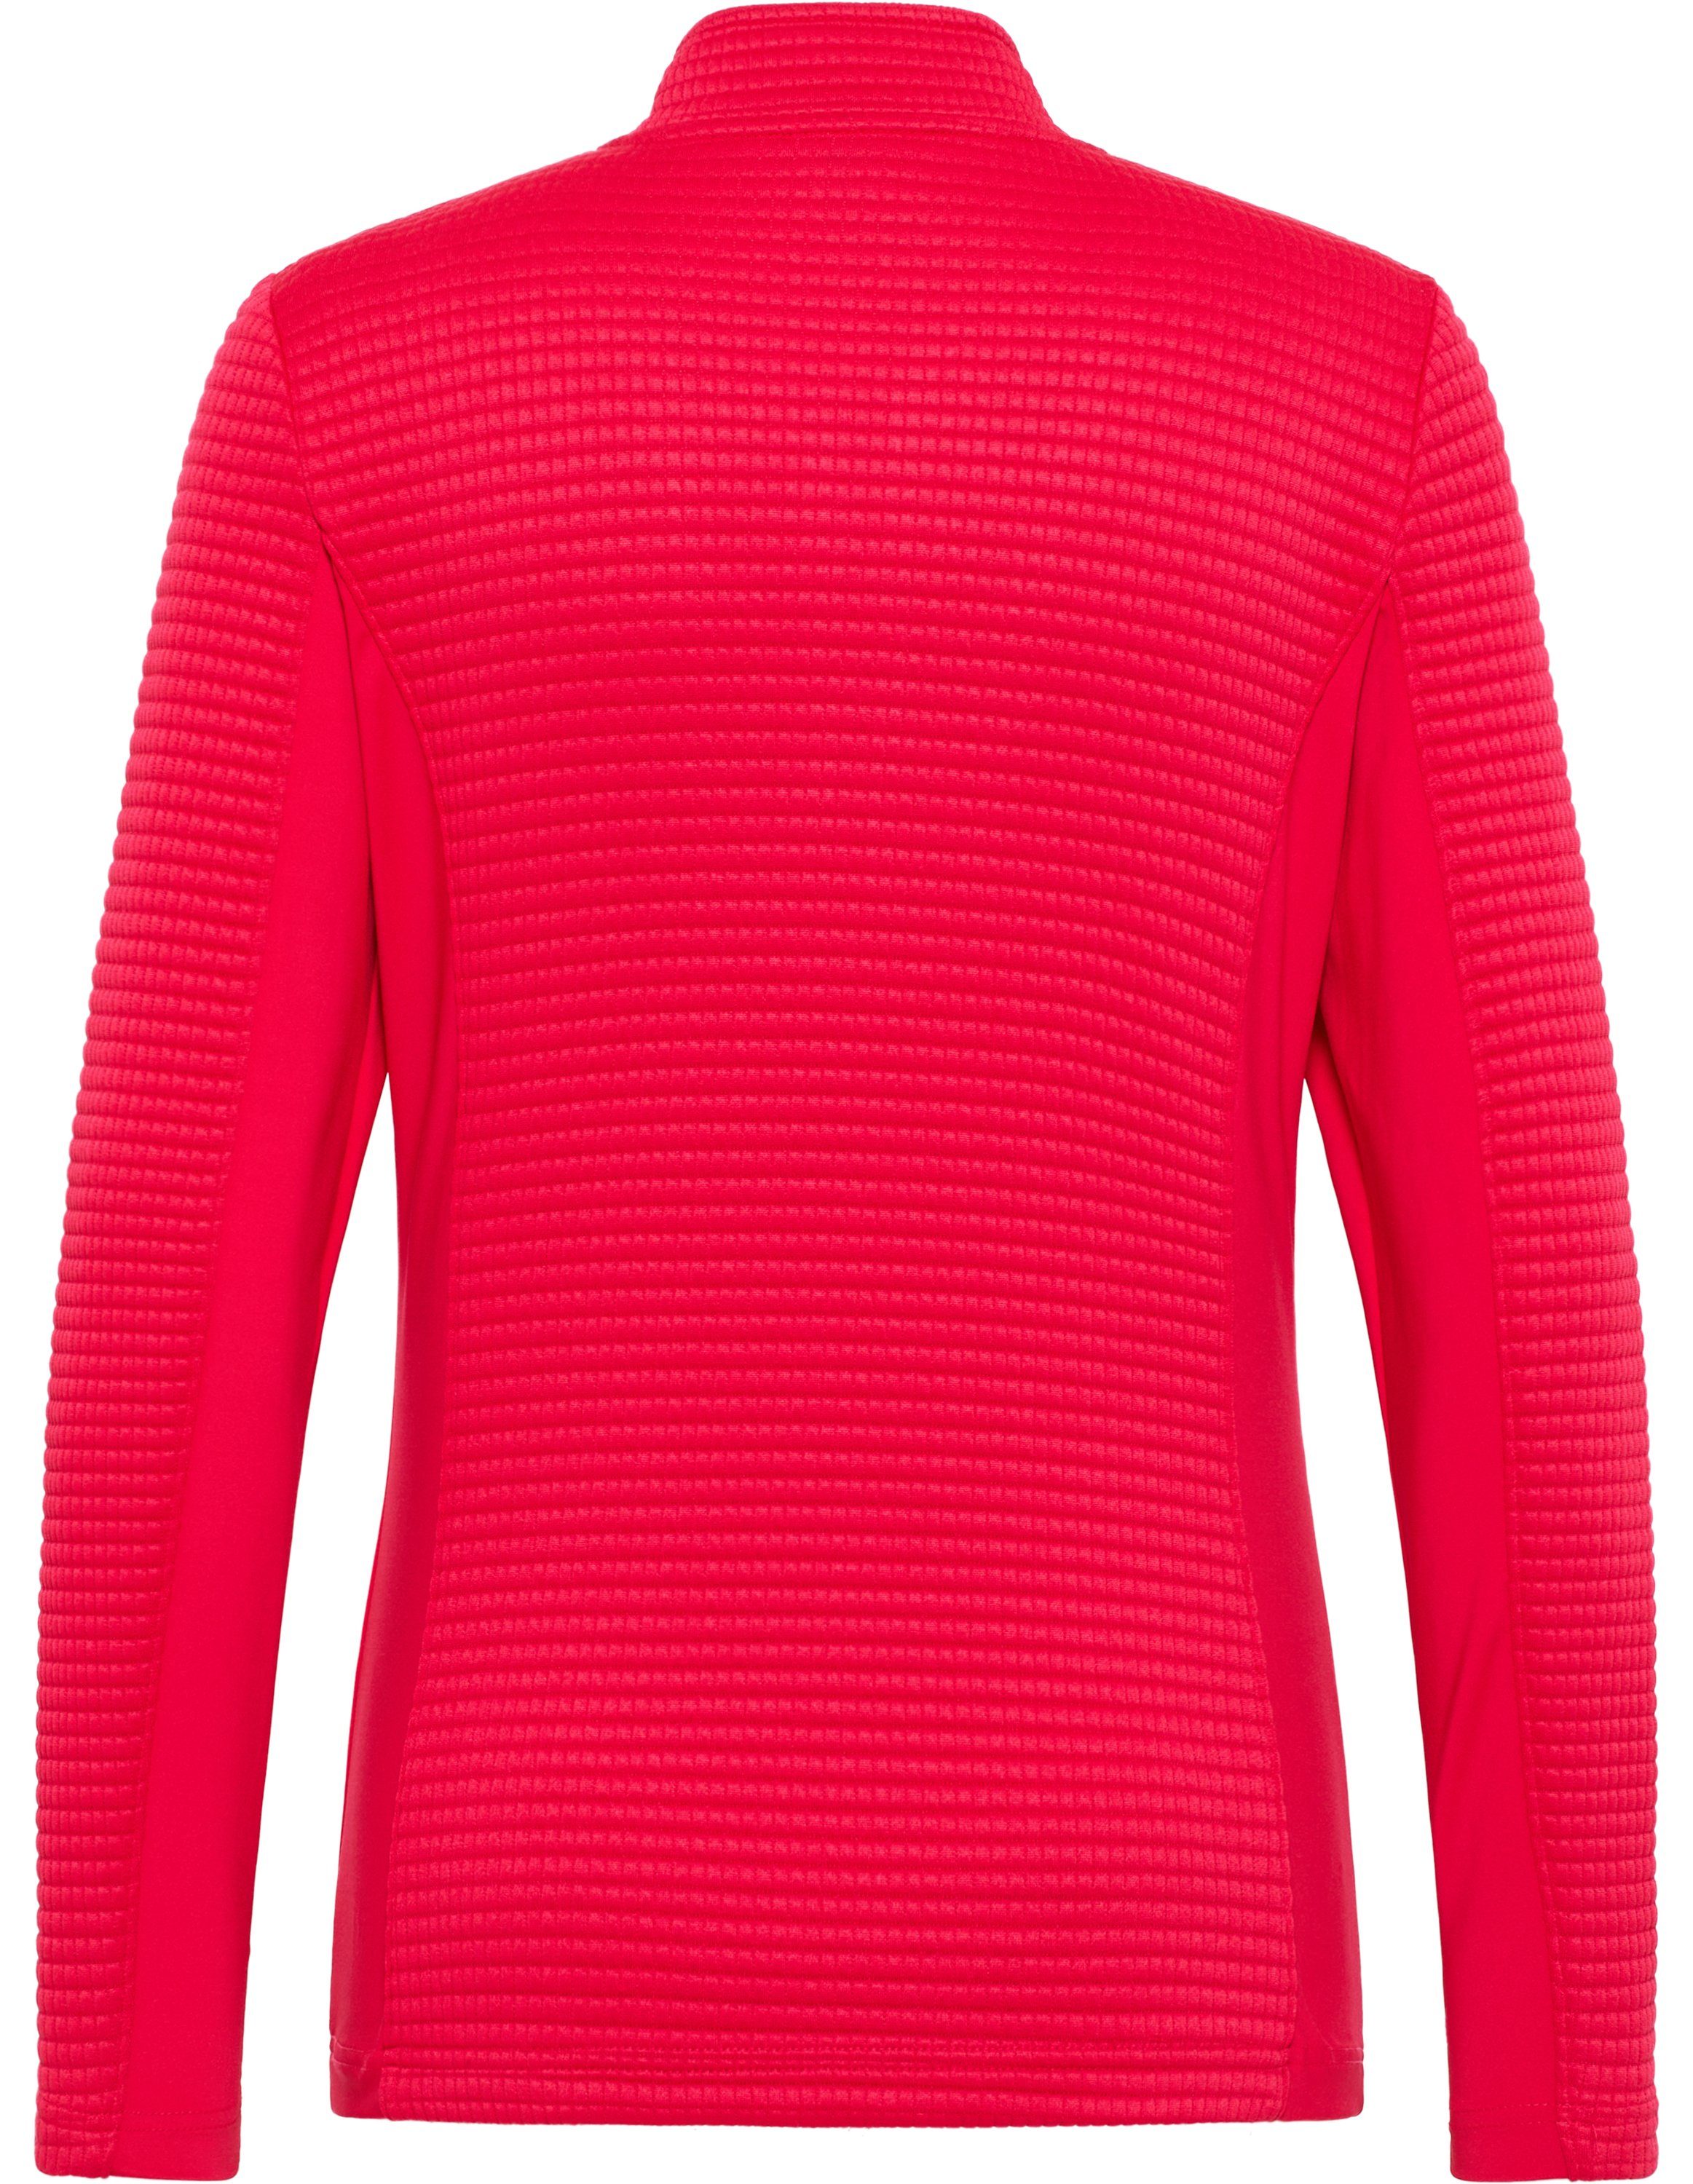 SANJA Trainingsjacke red Jacke Sportswear Joy virtual